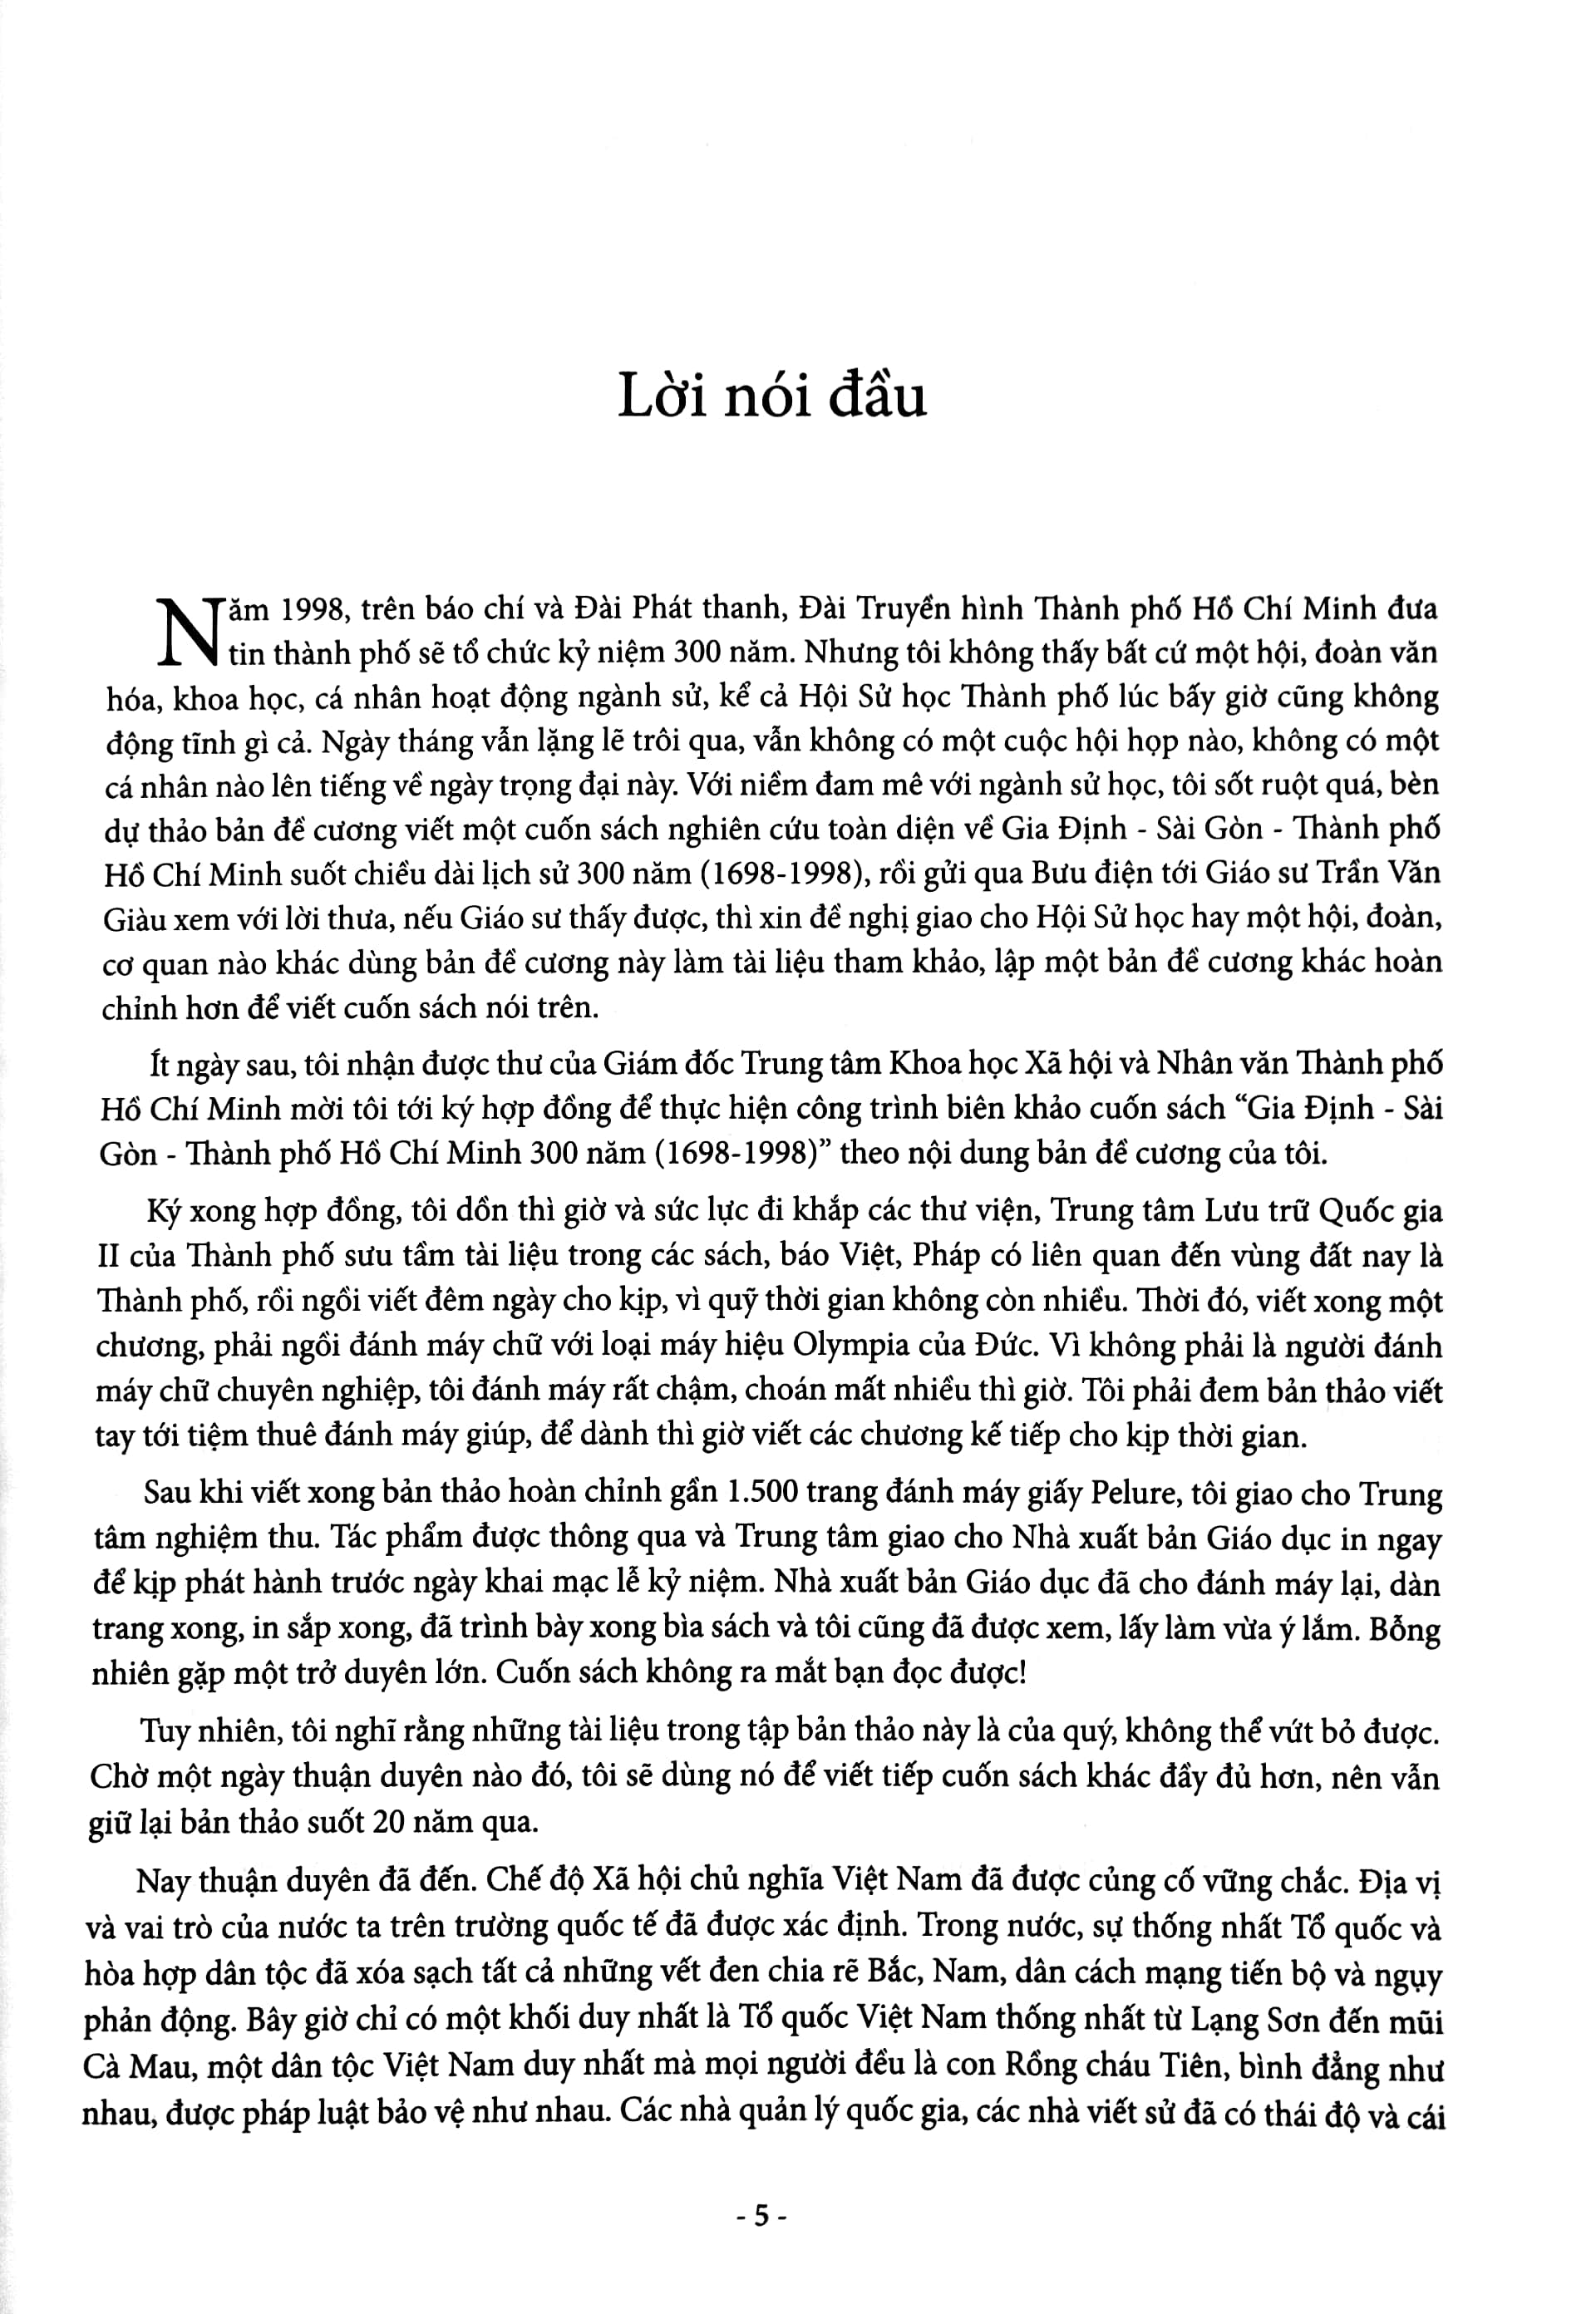 Gia Định - Sài Gòn - Thành Phố Hồ Chí Minh: Dặm Dài Lịch Sử 1698-2020 - Tập 1: 1698-1945 - Bìa Cứng PDF